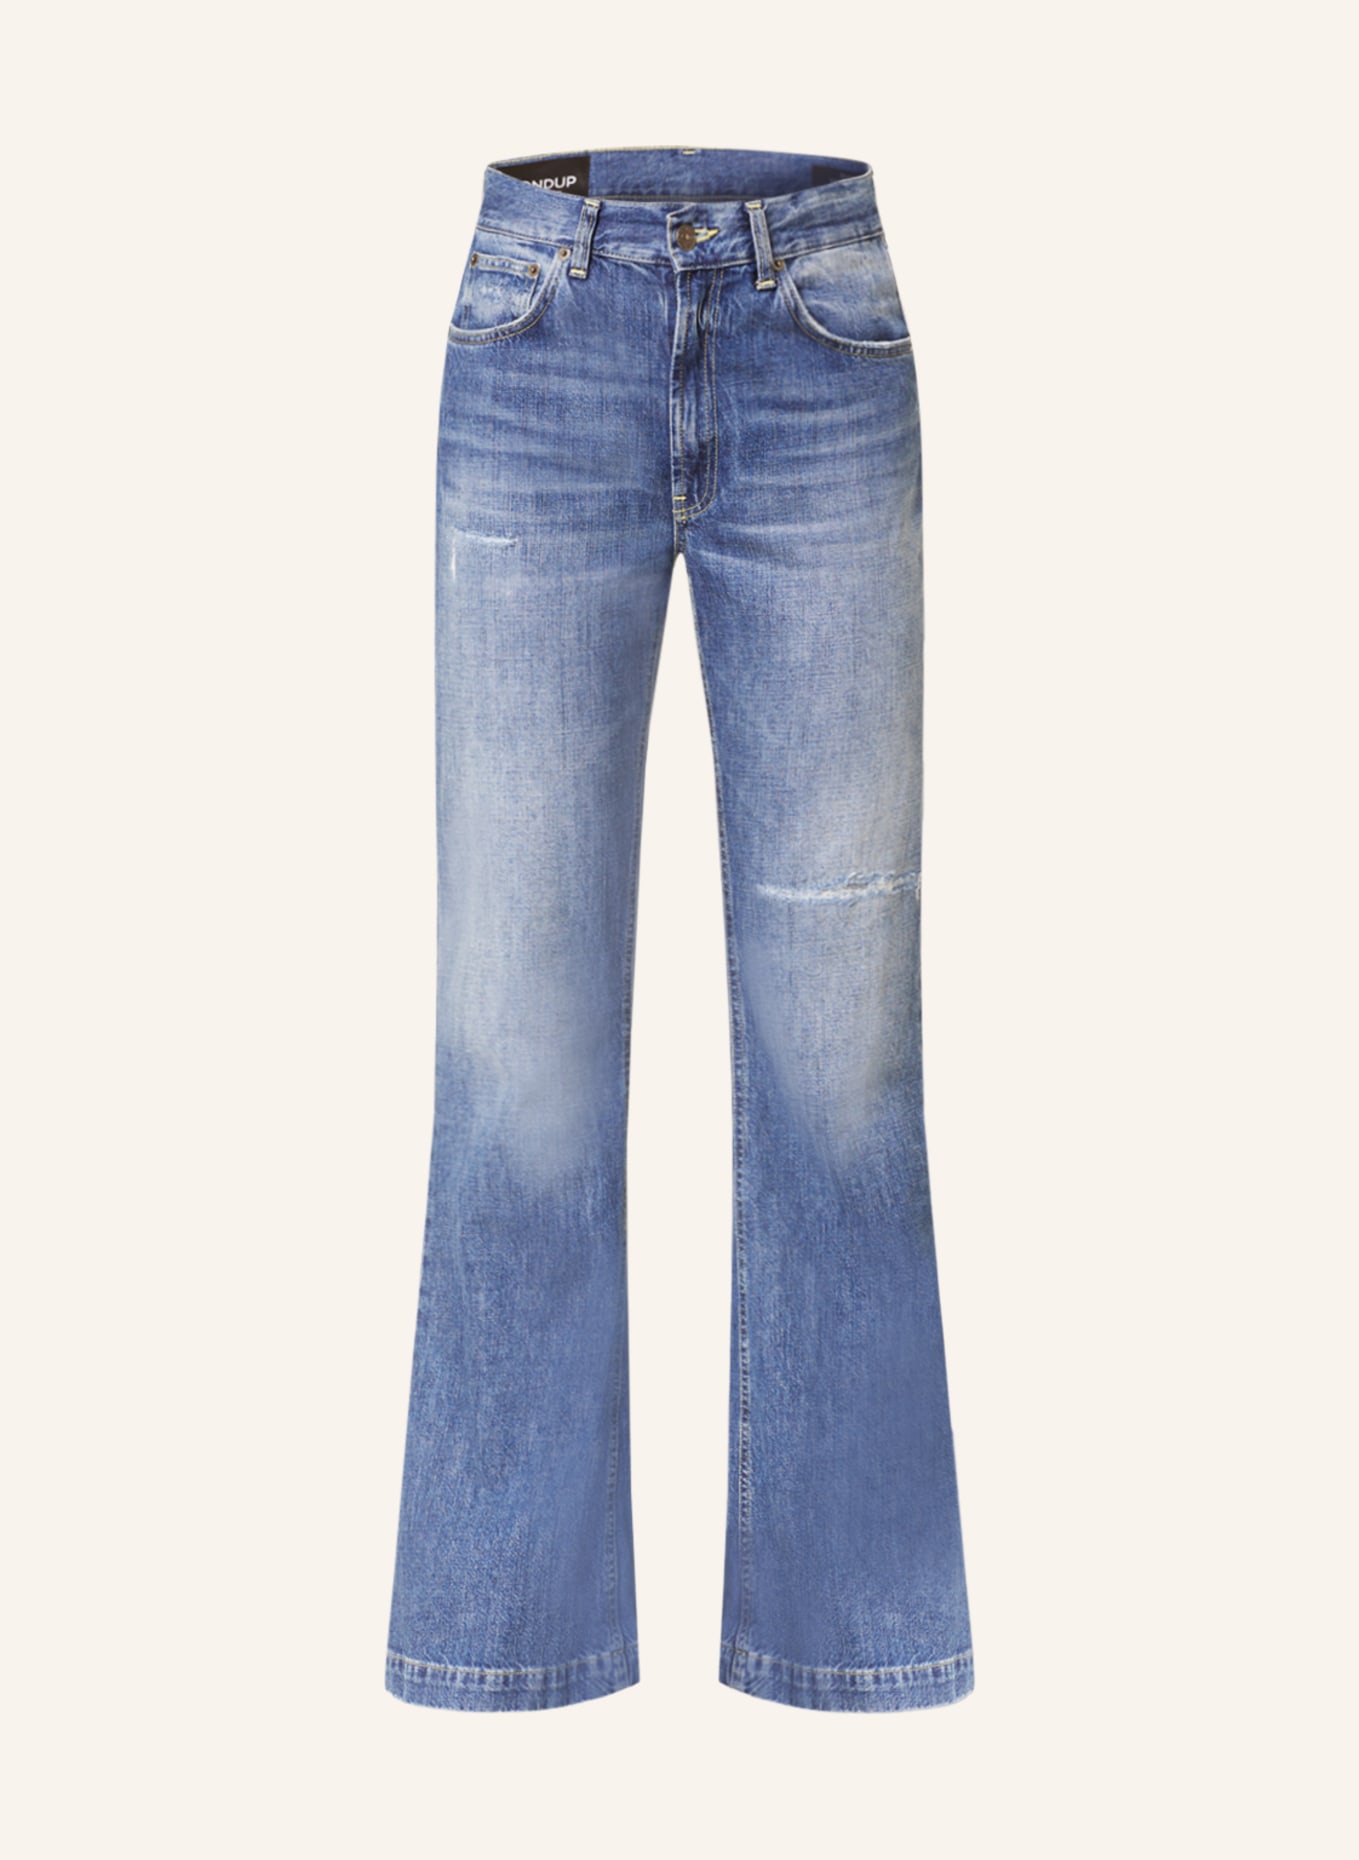 Dondup Flared jeans OLIVIA, Color: GI9 800 blau denim (Image 1)